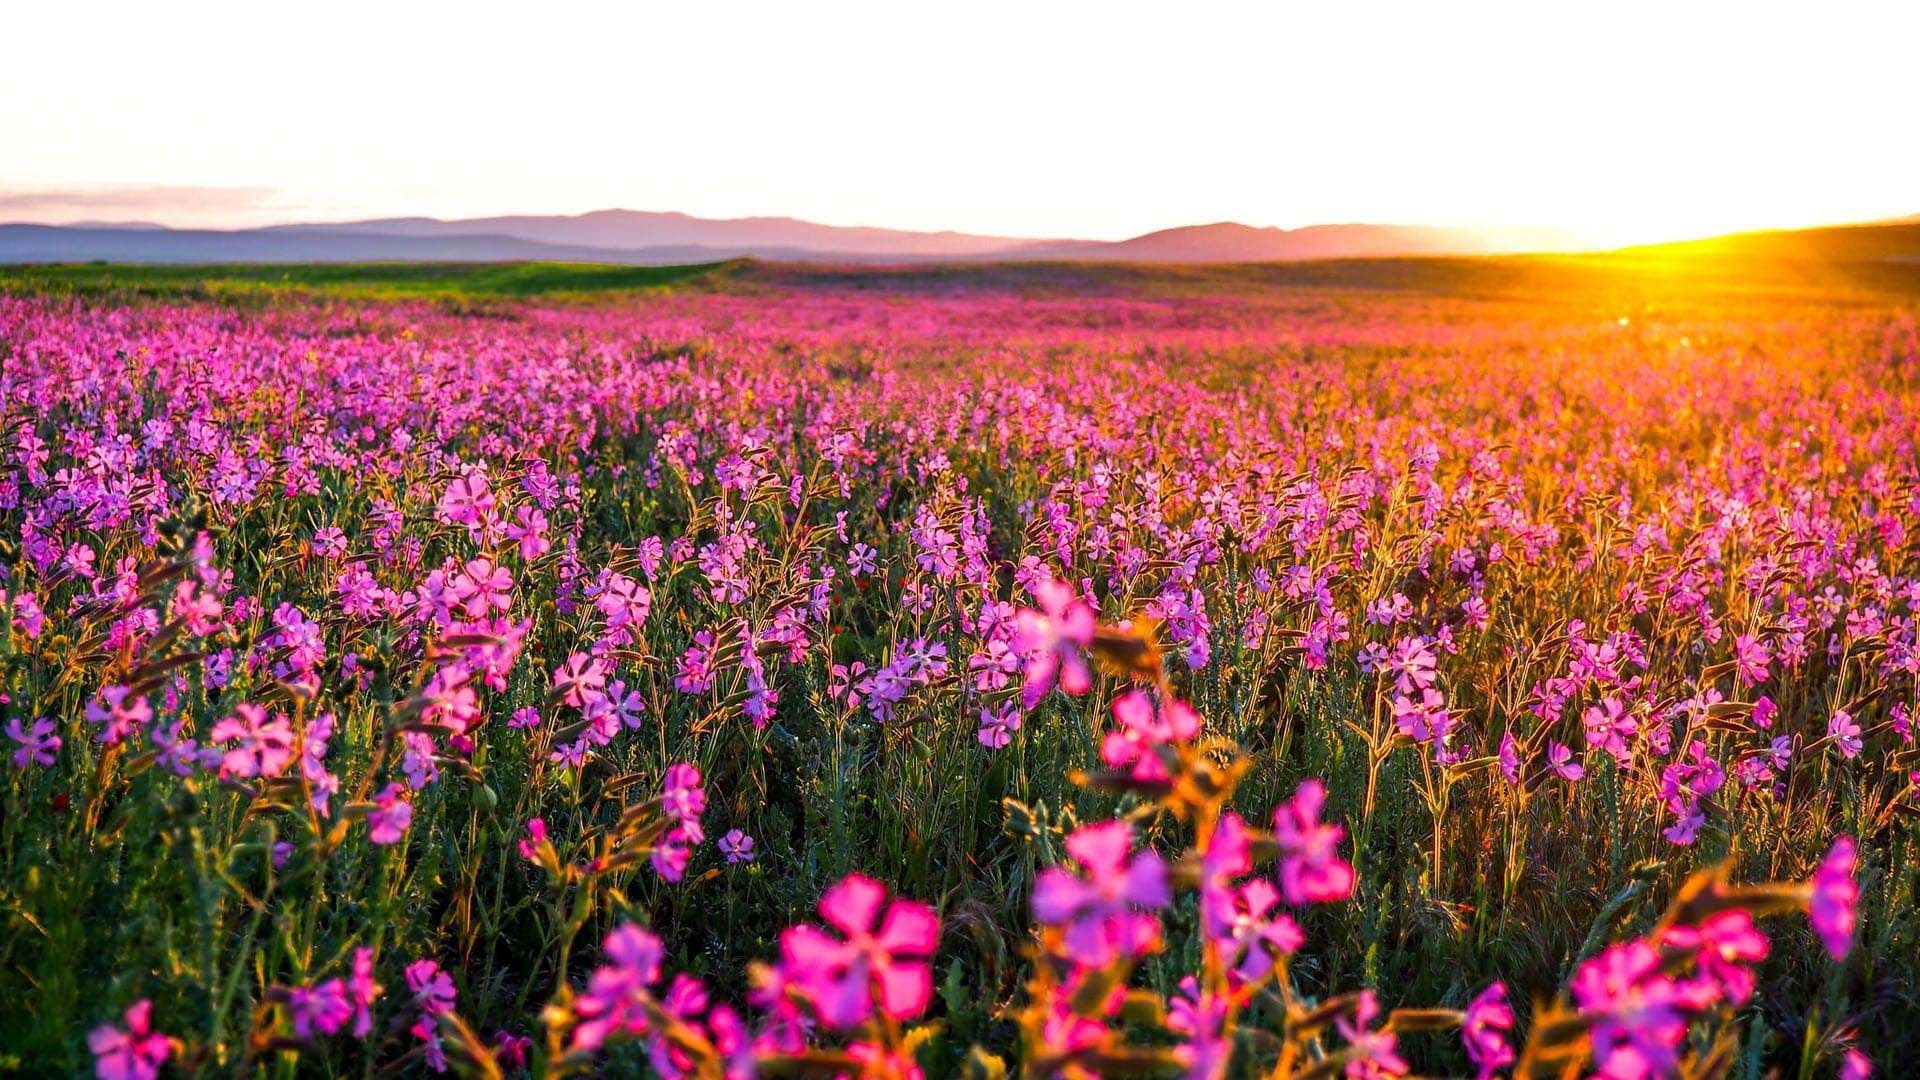 Hoa (Flower): Trong bối cảnh thiên nhiên đầy sắc màu này, hoa luôn là một nguồn cảm hứng cho những bức ảnh đẹp. Xem những bông hoa đầy màu sắc và hương thơm thật dễ chịu chắc chắn sẽ mang đến cho bạn những giây phút thư giãn và kết nối với thiên nhiên.